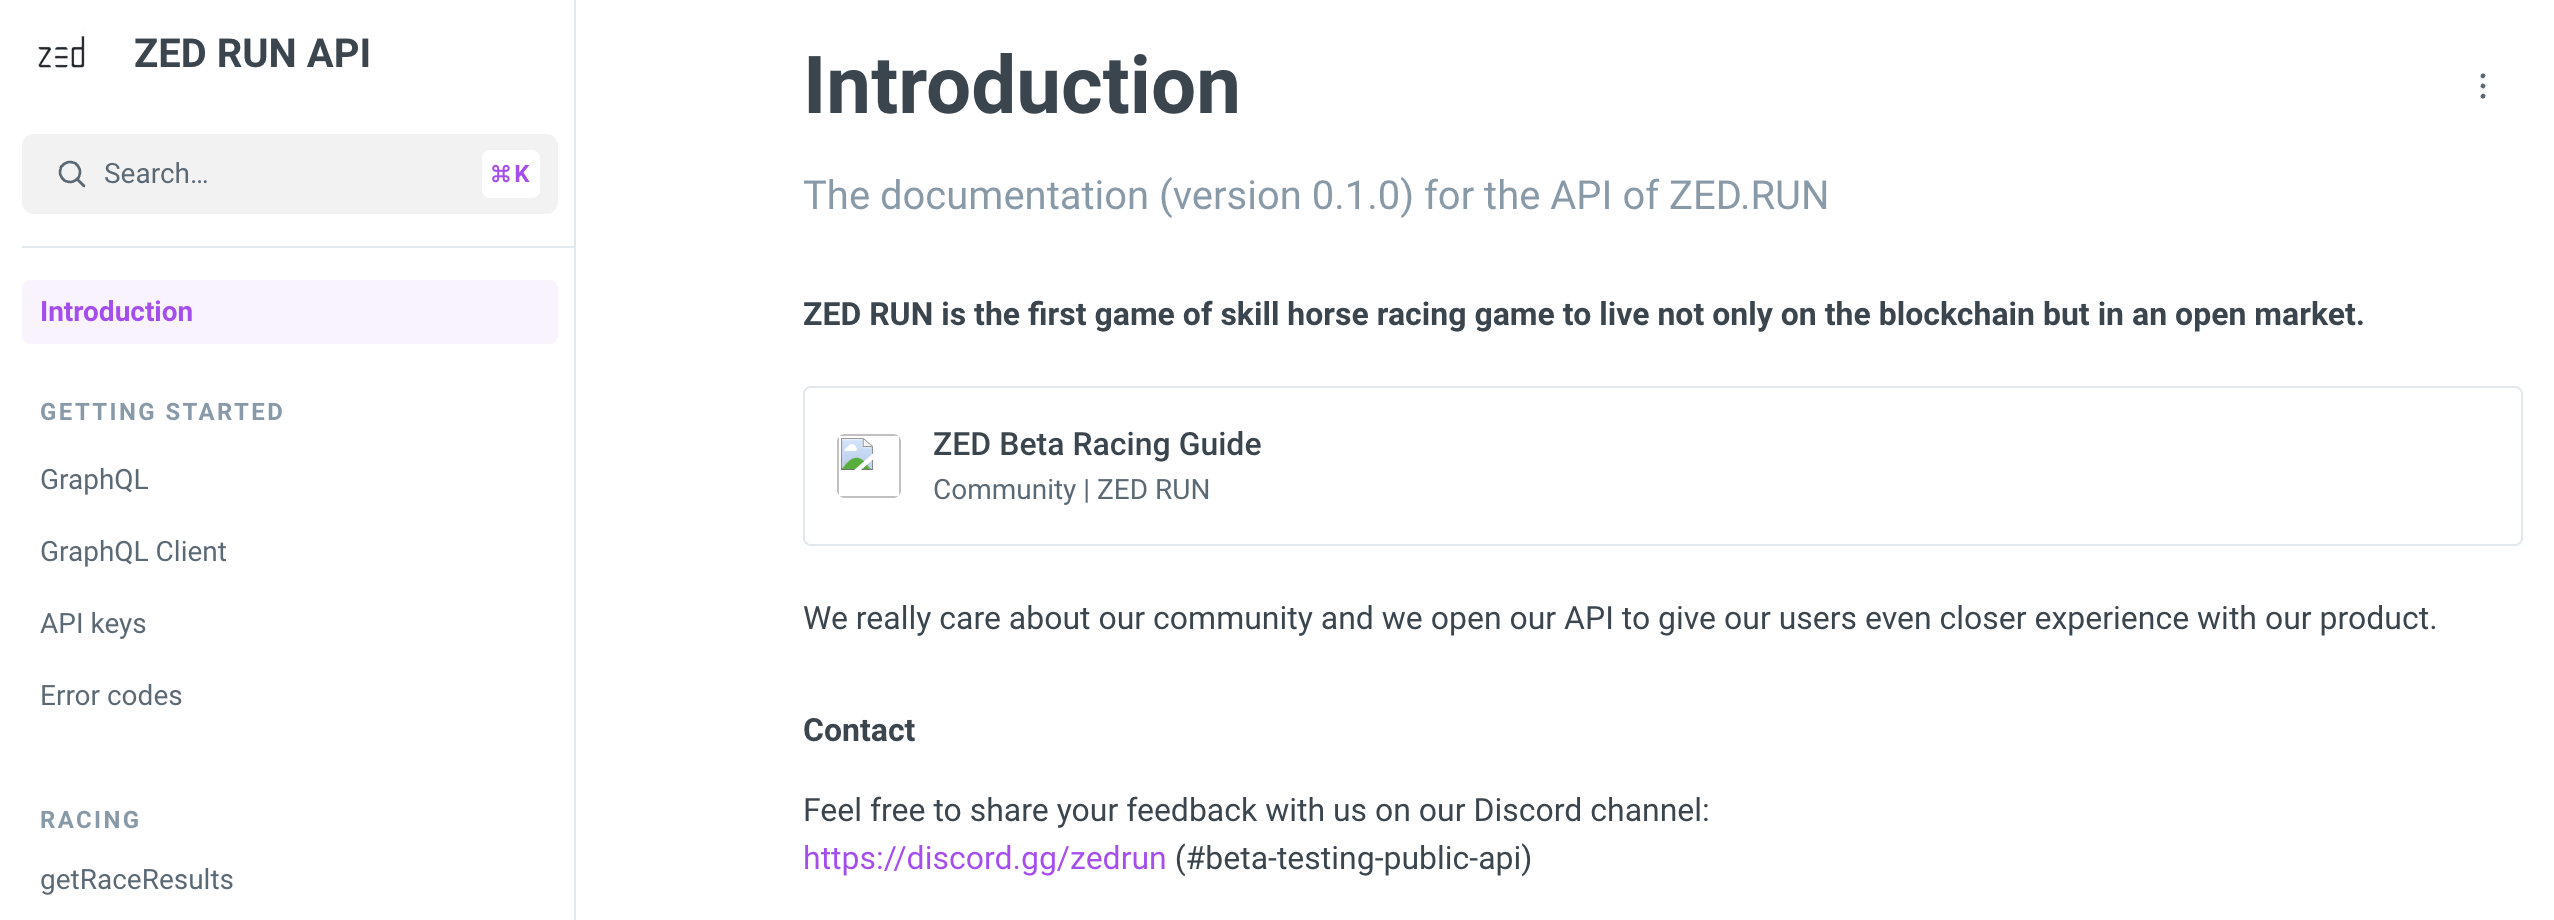 zed-run-api-sharing